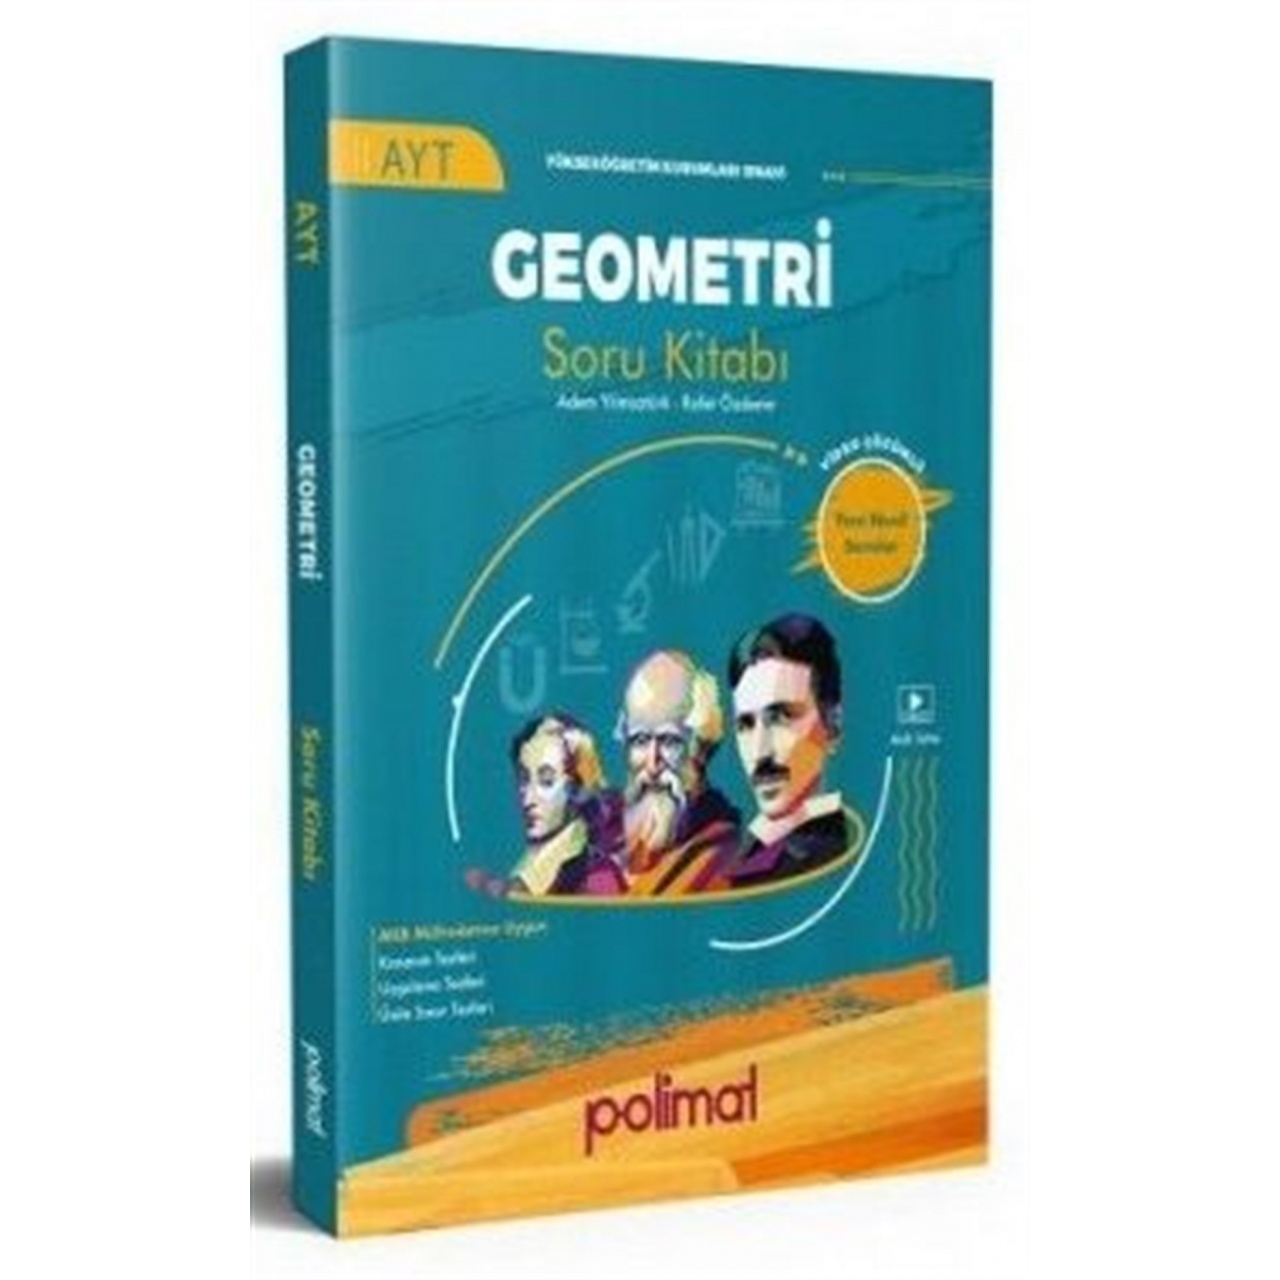 AYT Geometri Soru Kitabı Polimat Yayınları